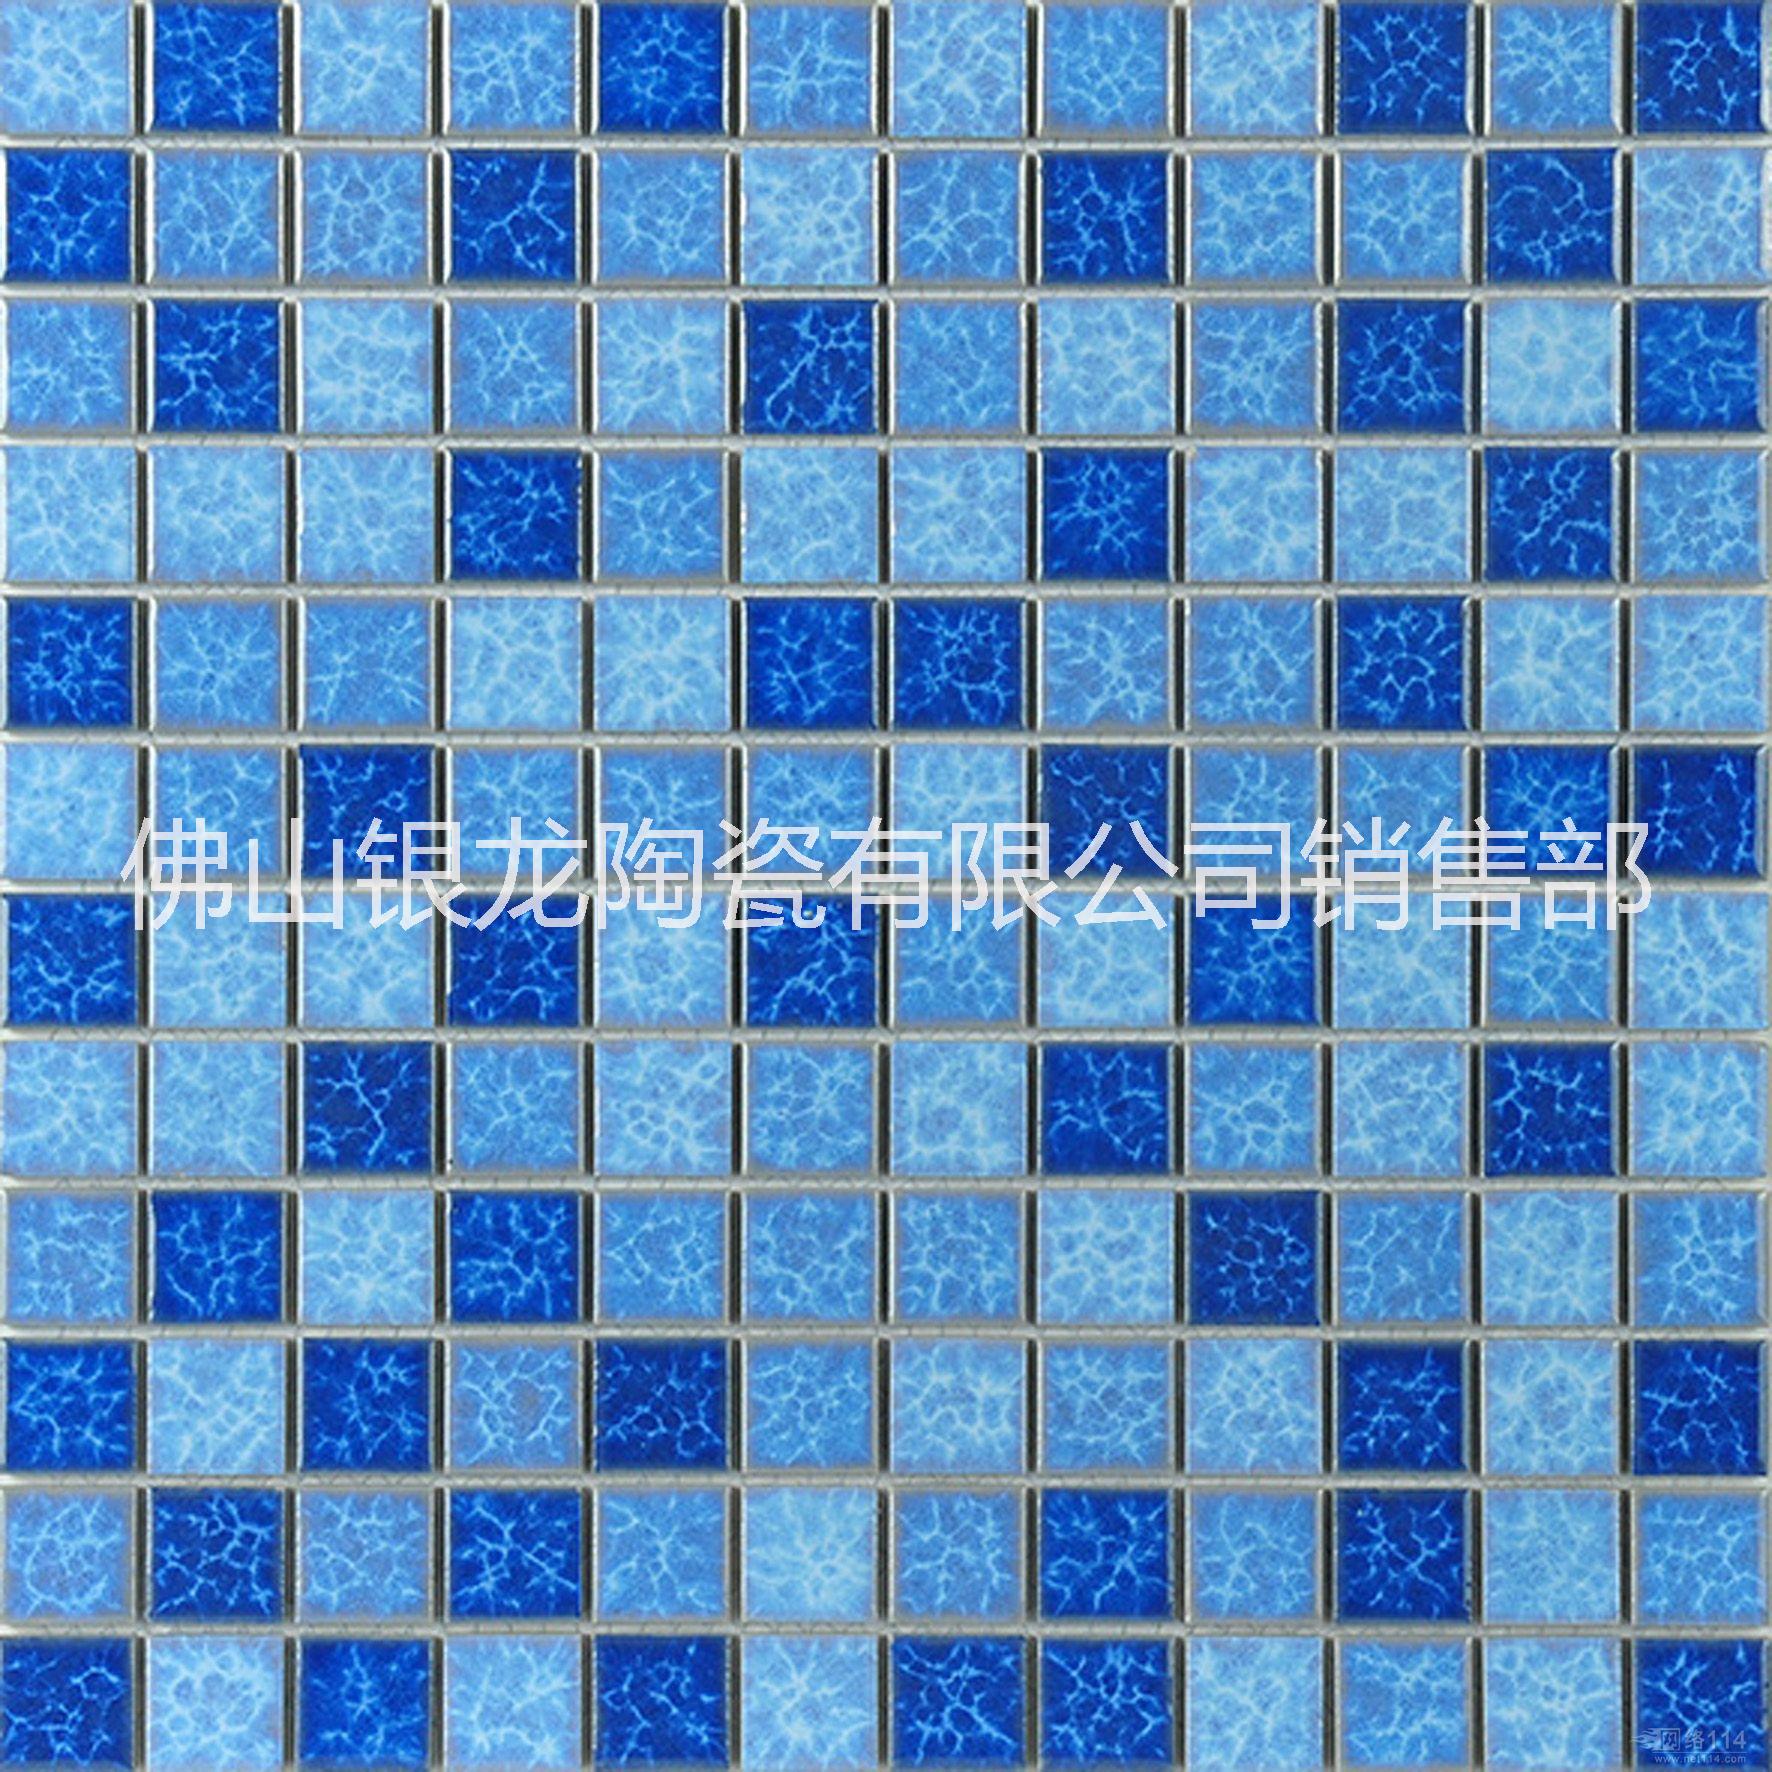 马赛克瓷砖厂家直销 蓝色马赛克泳池砖